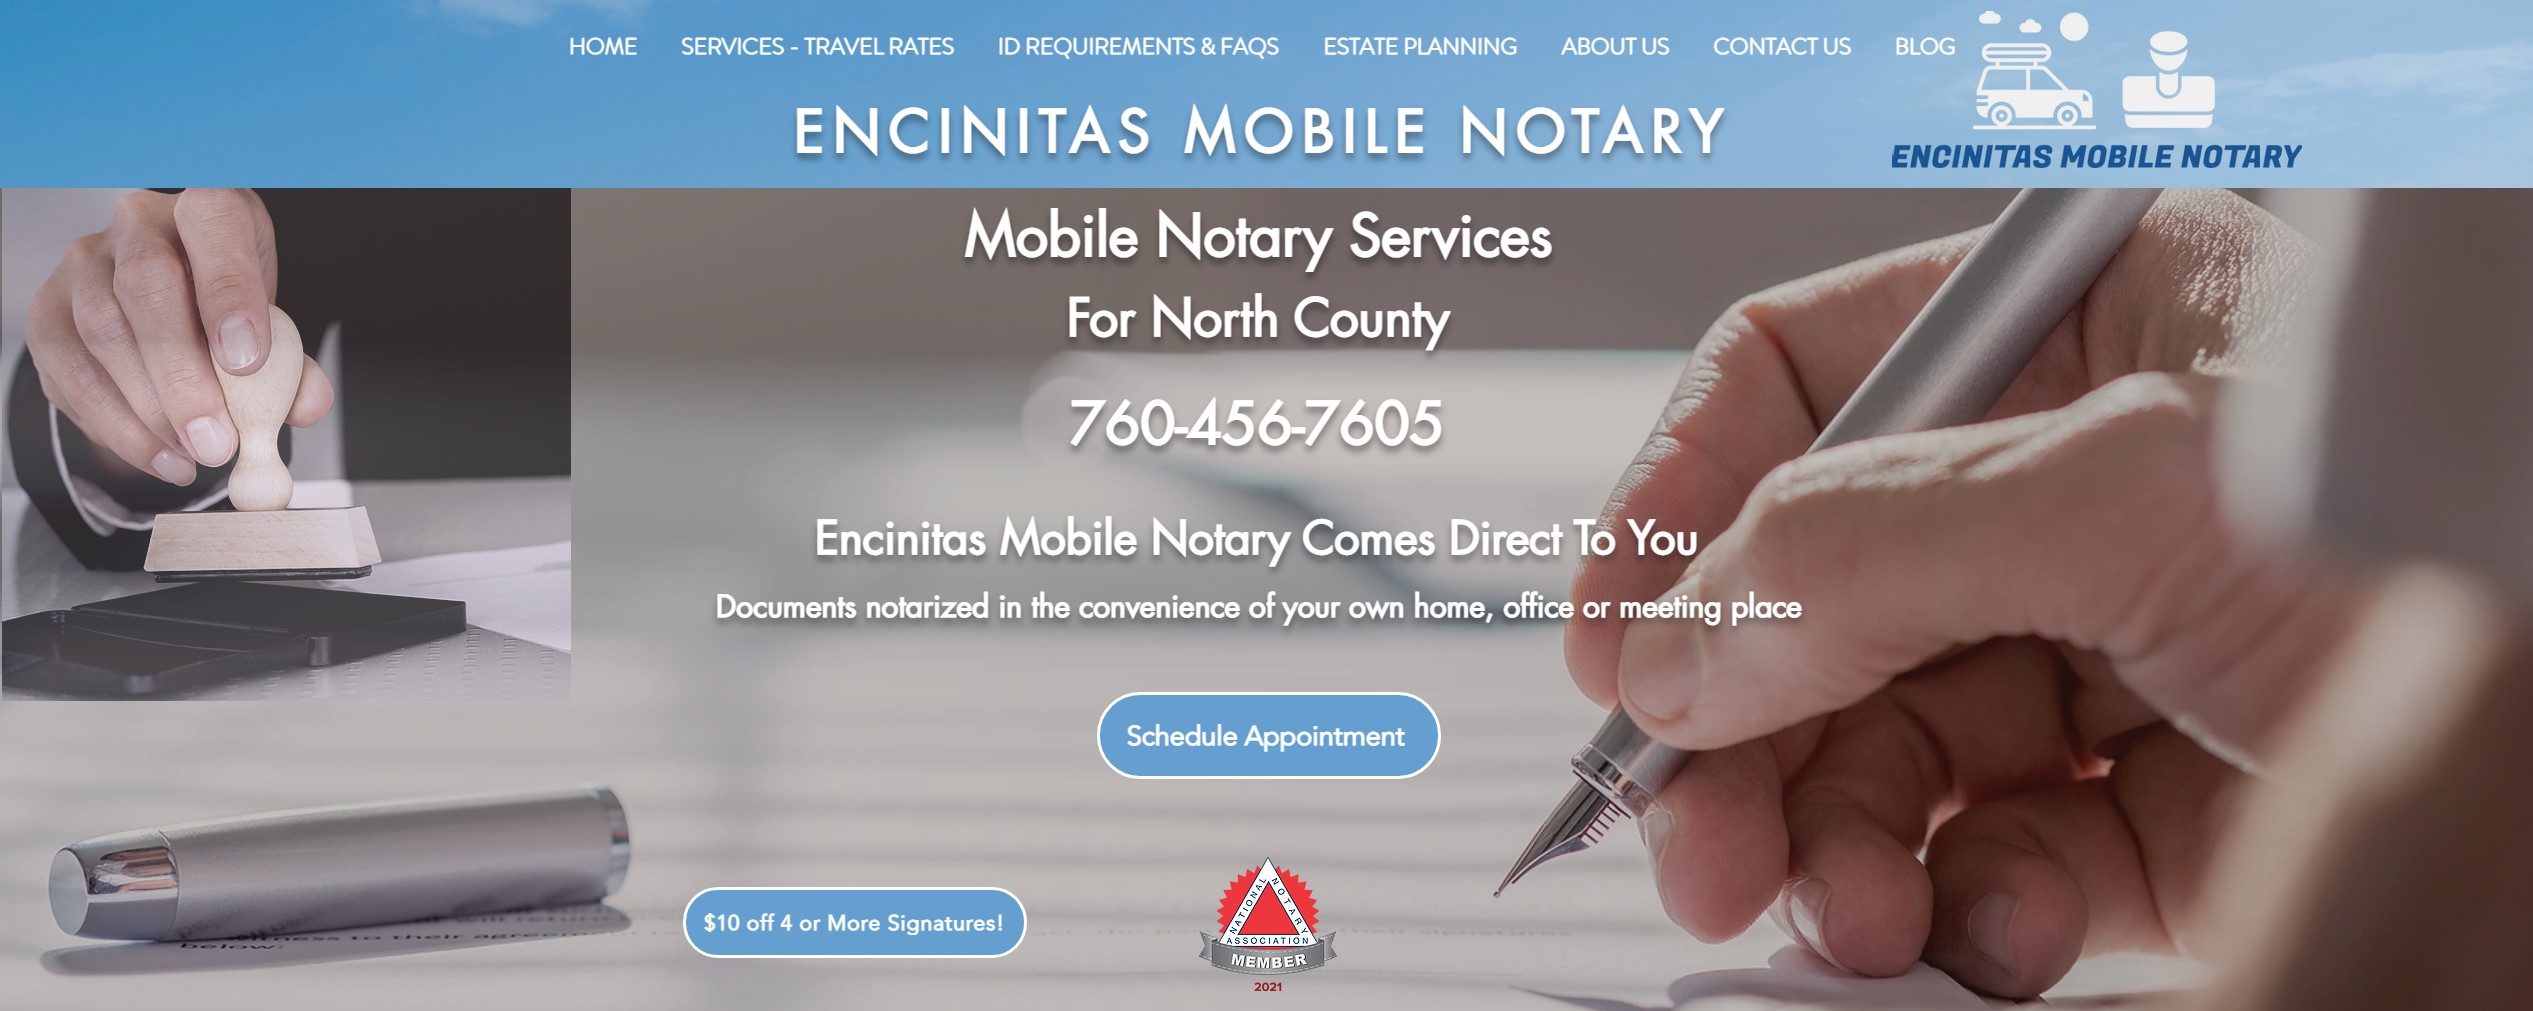 encinitas-mobile-notary-original-header